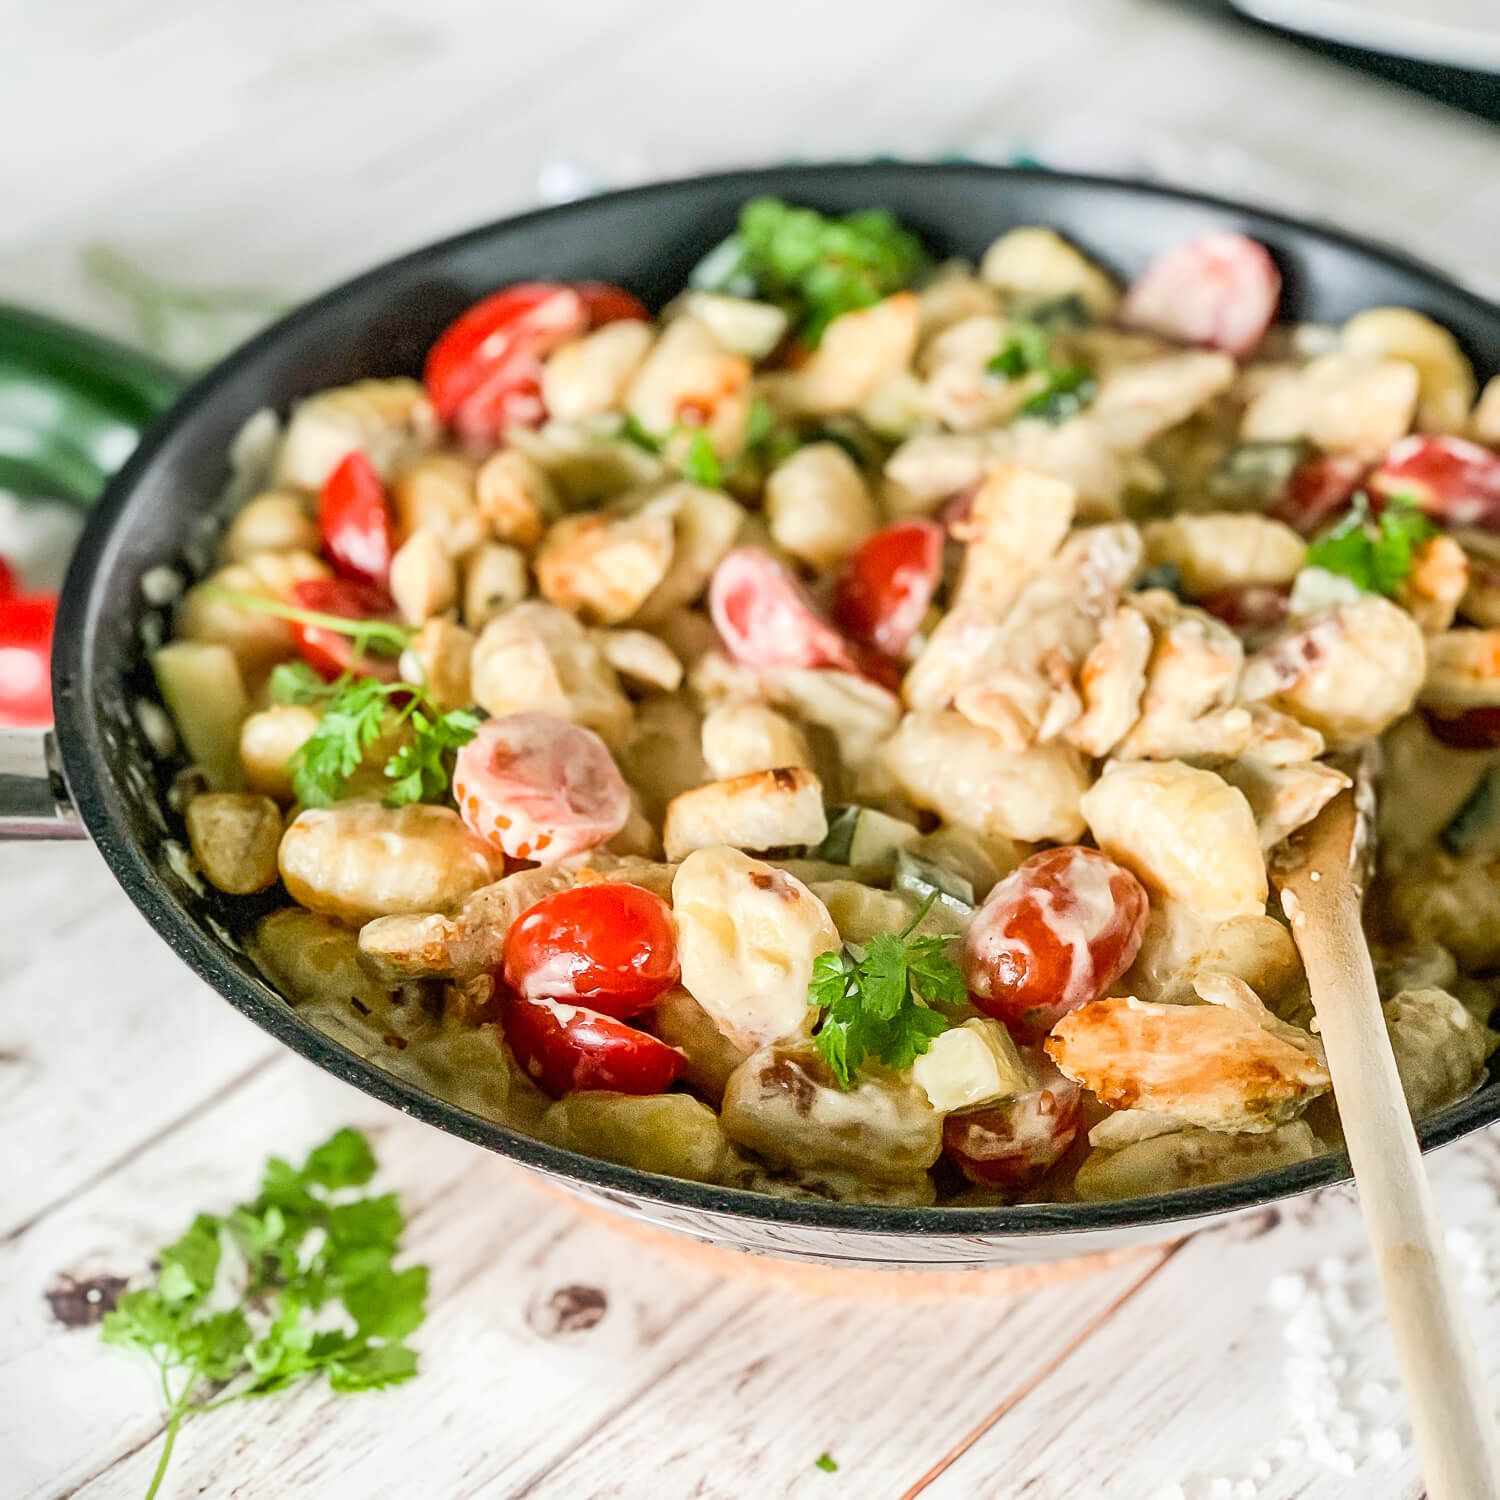 Schnelle und gesunde Gnocchi-Gemüse-Pfanne mit Cocktailtomaten und Zucchini - ein einfaches Familienrezept